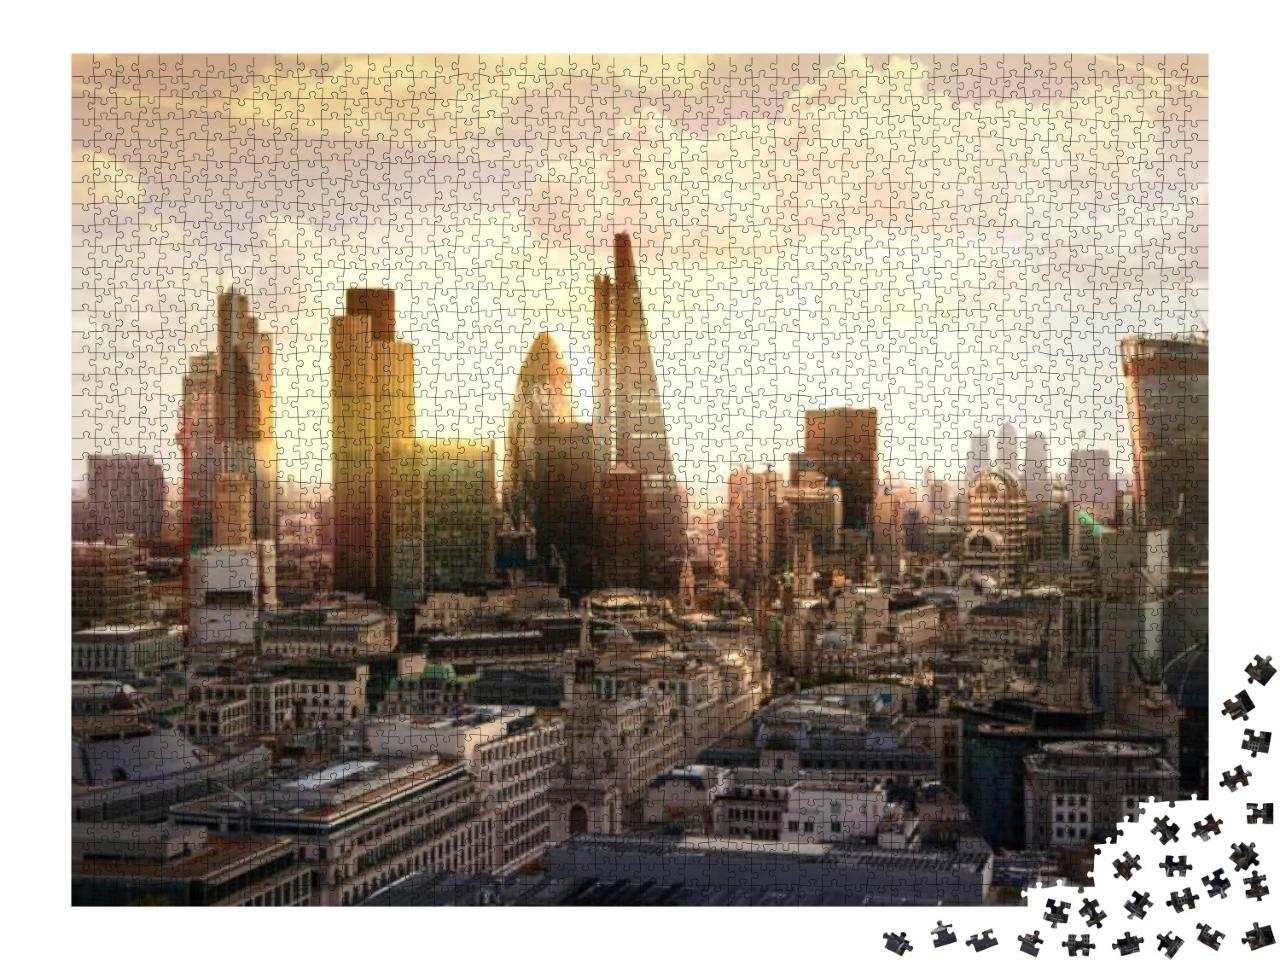 Puzzle 2000 Teile „Abendliche Skyline des Bankenviertels, London, UK“